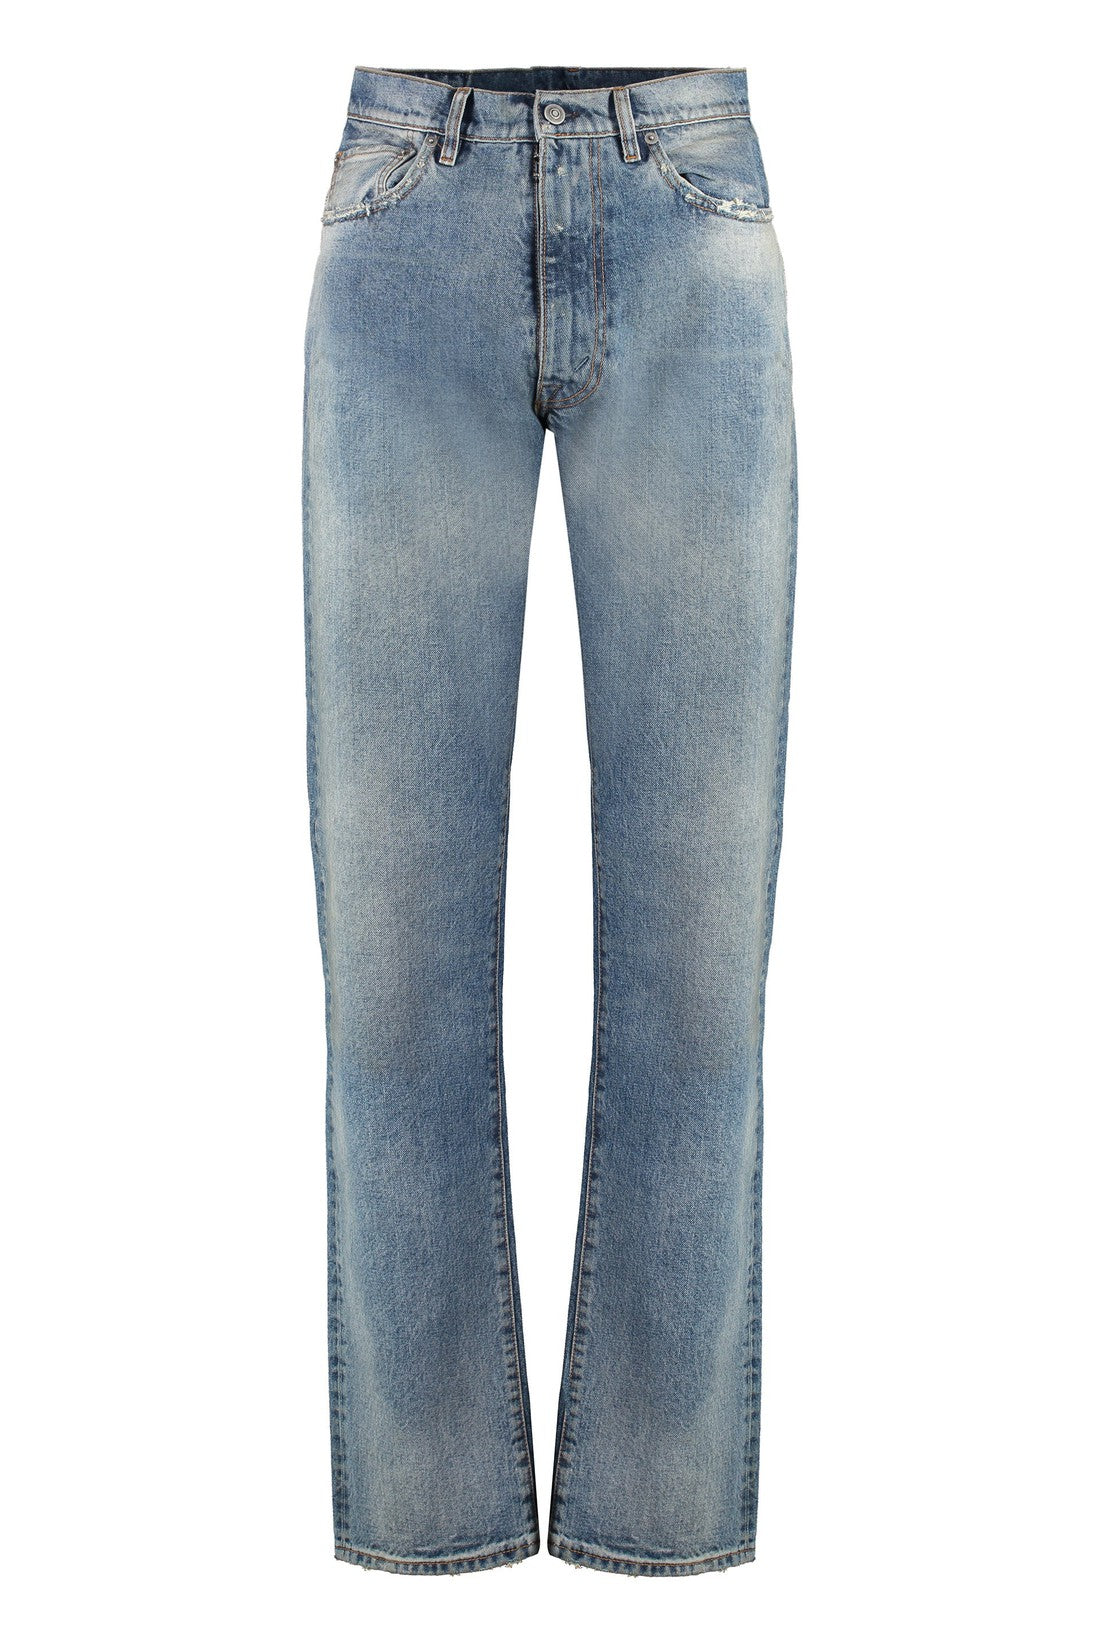 Maison Margiela-OUTLET-SALE-Destroyed straight leg jeans-ARCHIVIST